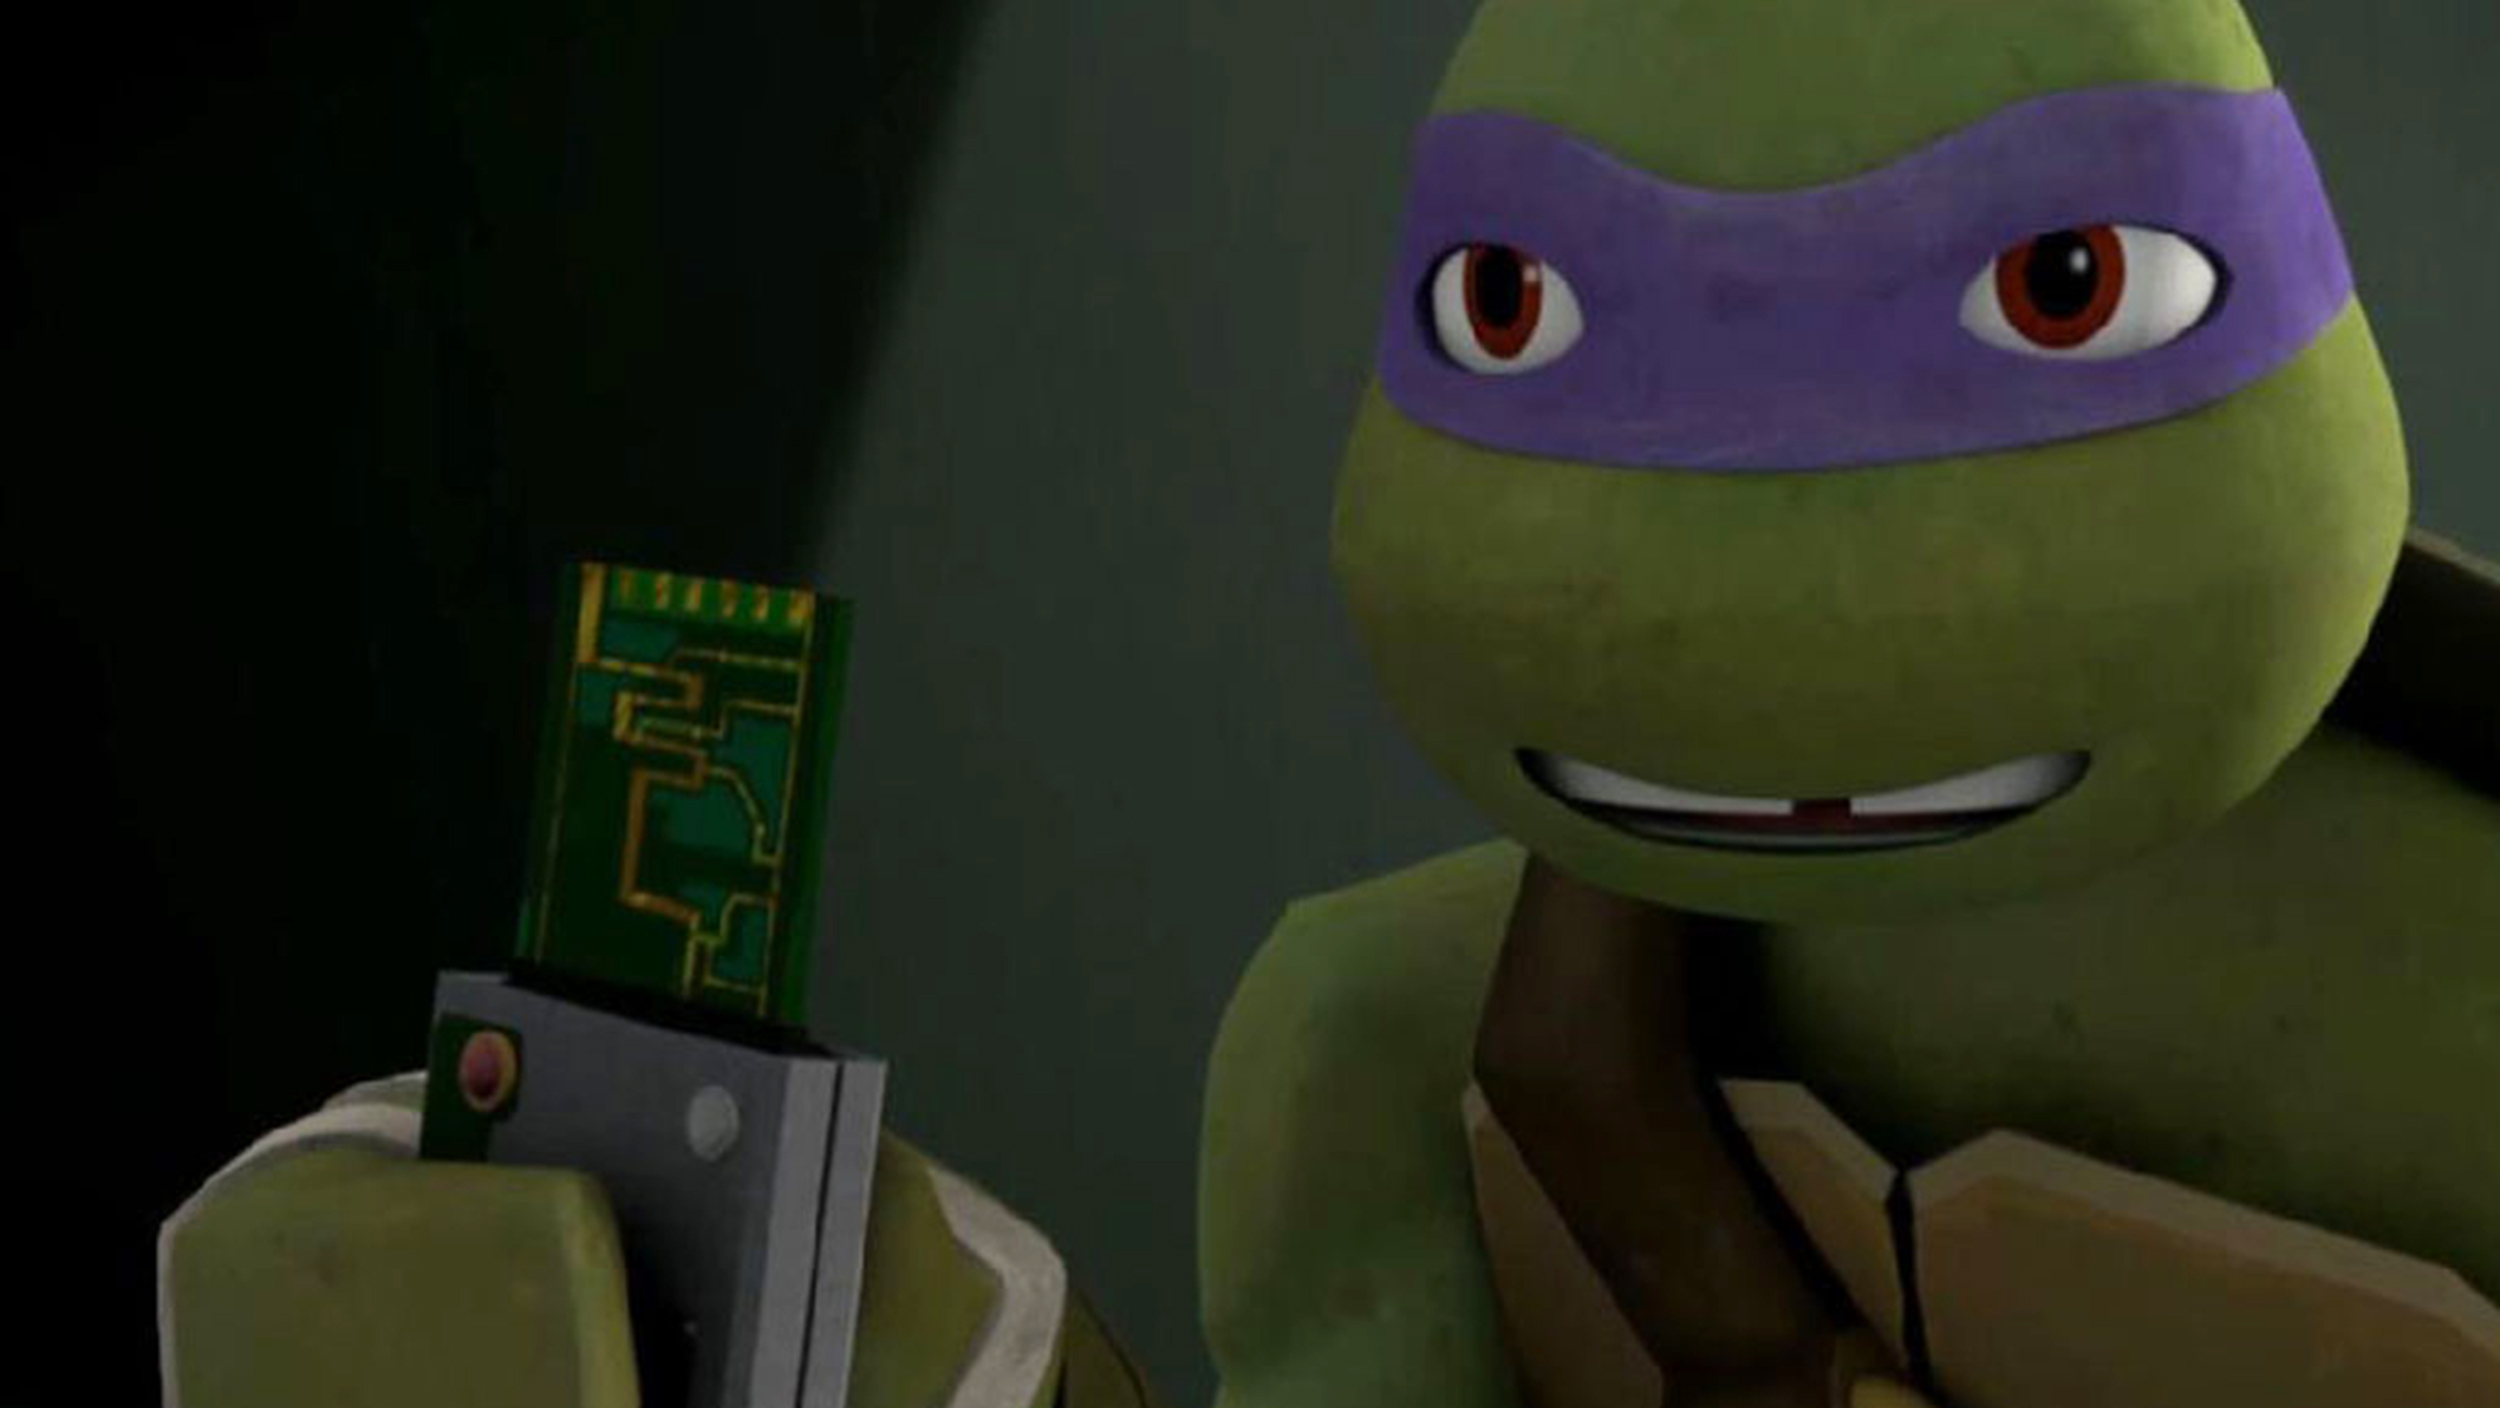 Teenage Mutant Ninja Turtles' movie spawns pet turtle warning